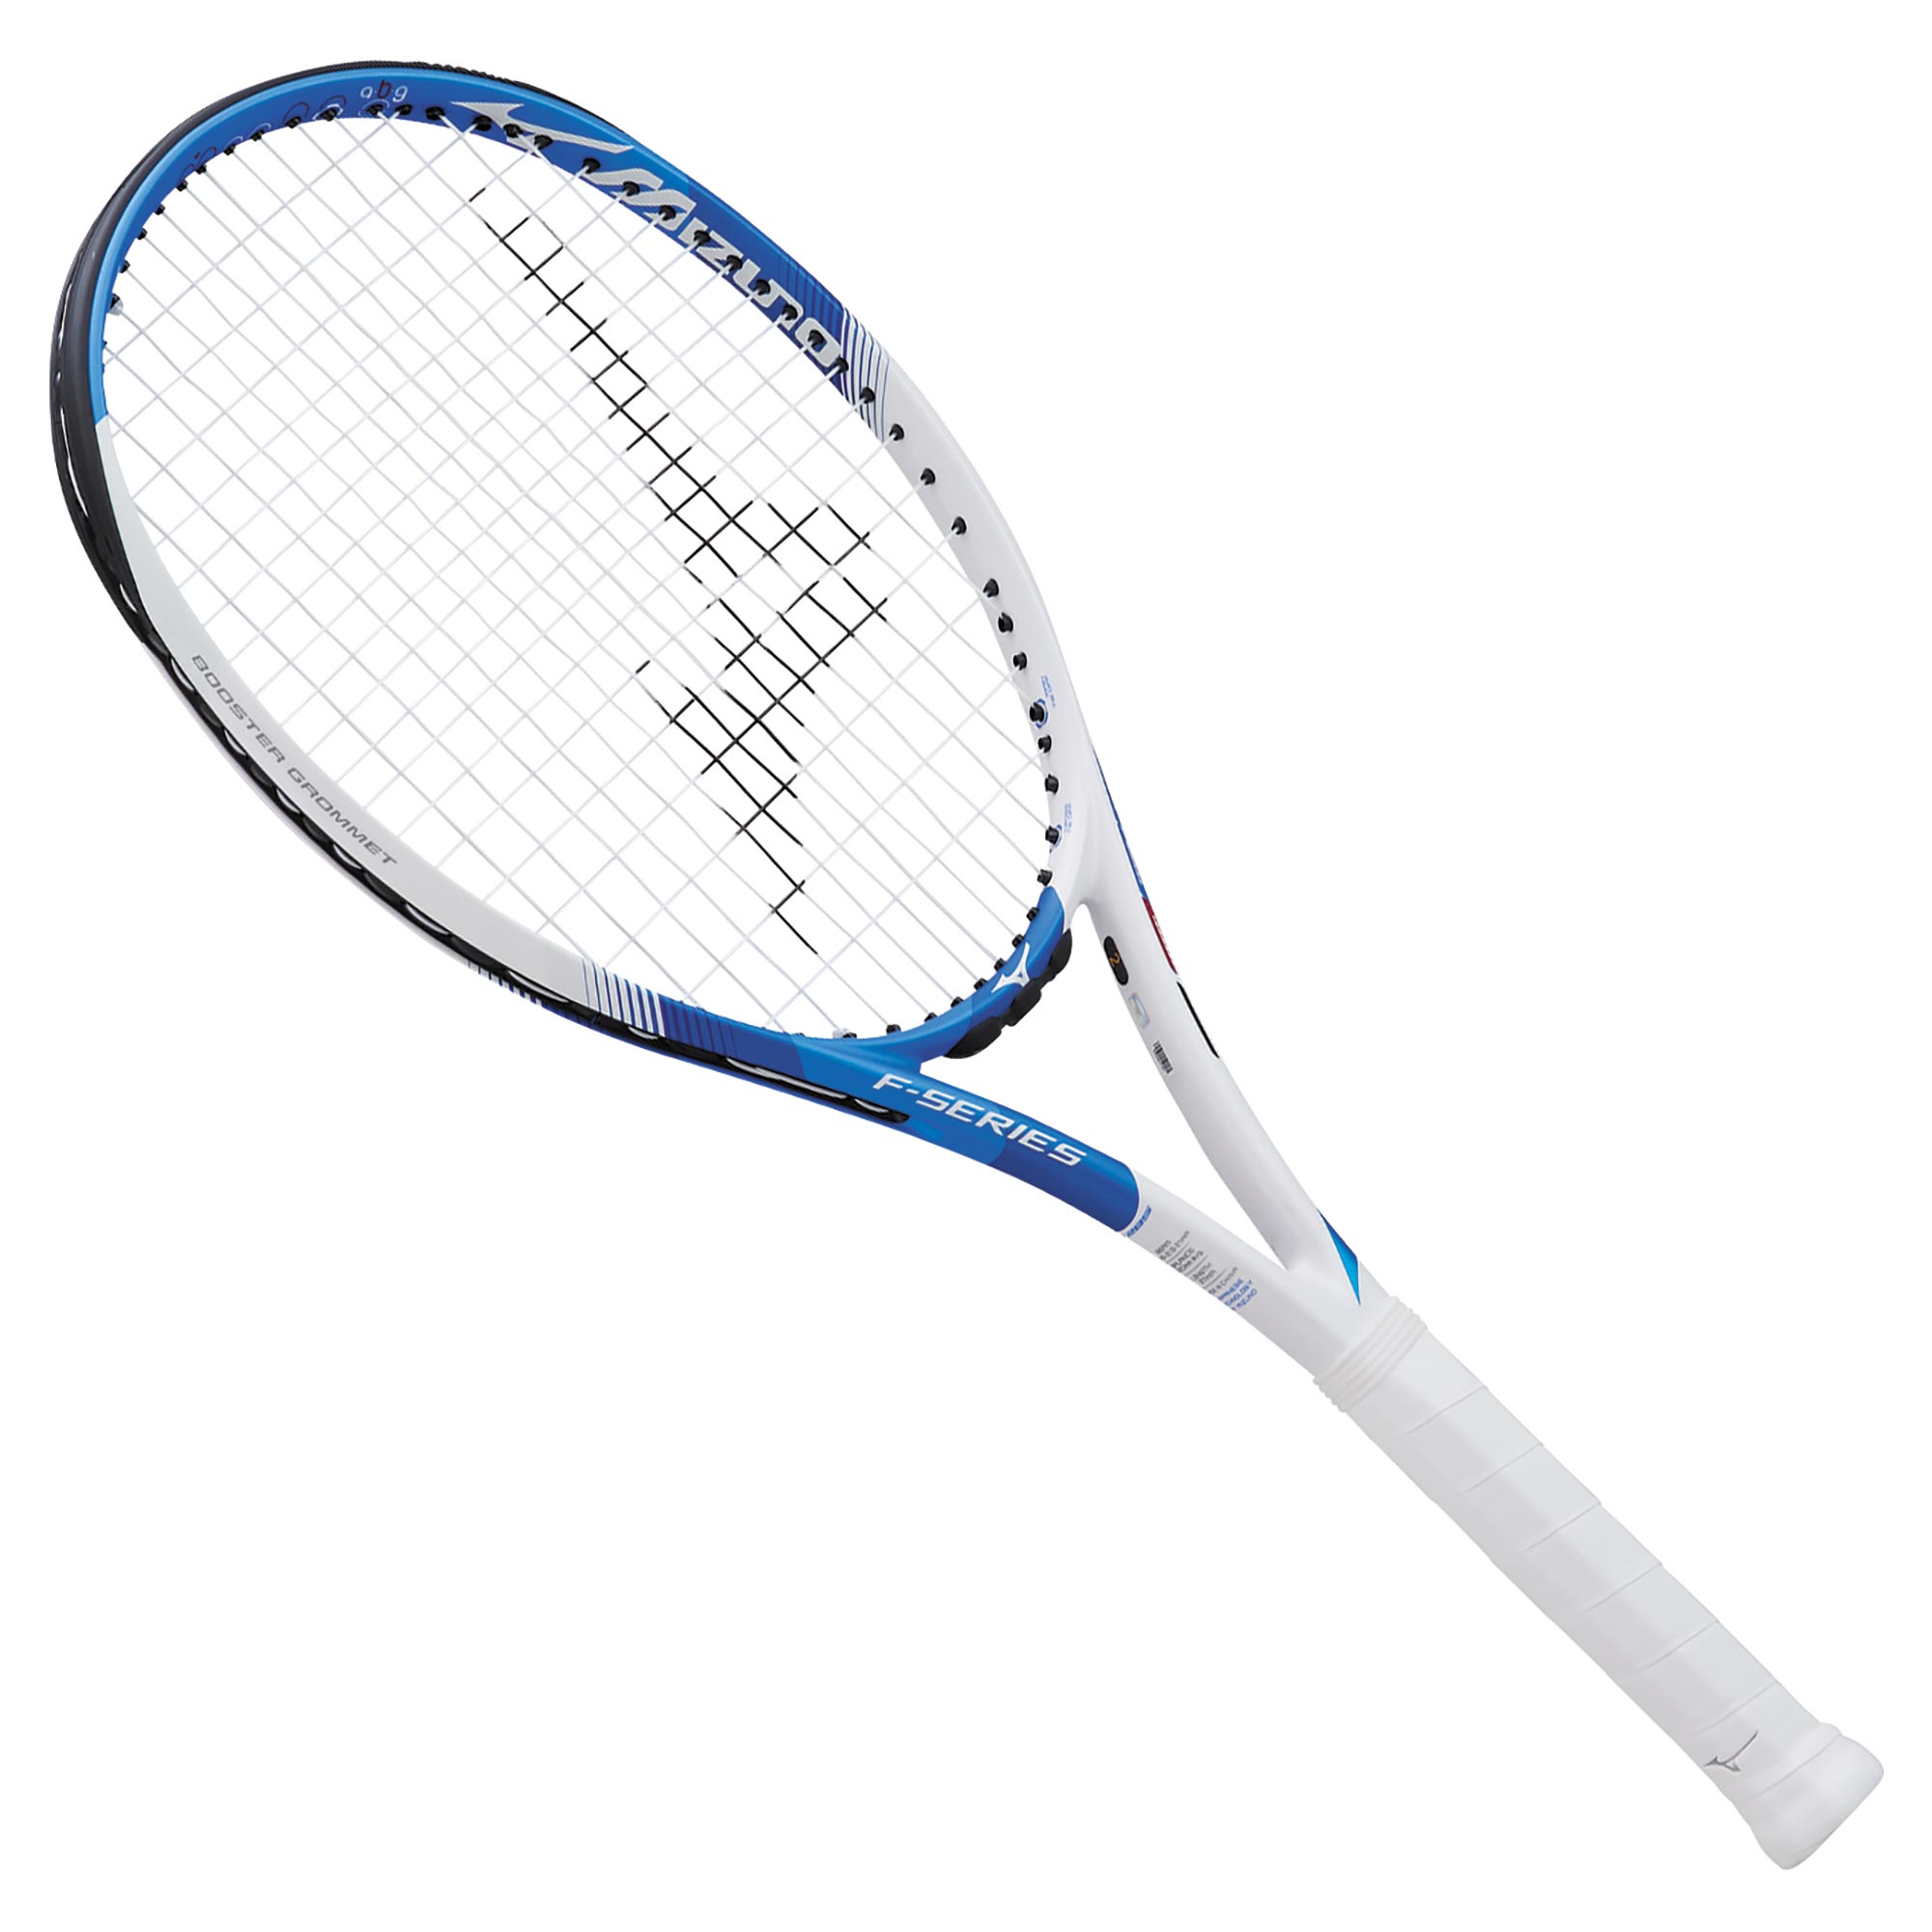 エフ 300(テニス)|63JTH271|ラケット|テニス|ミズノ公式オンライン